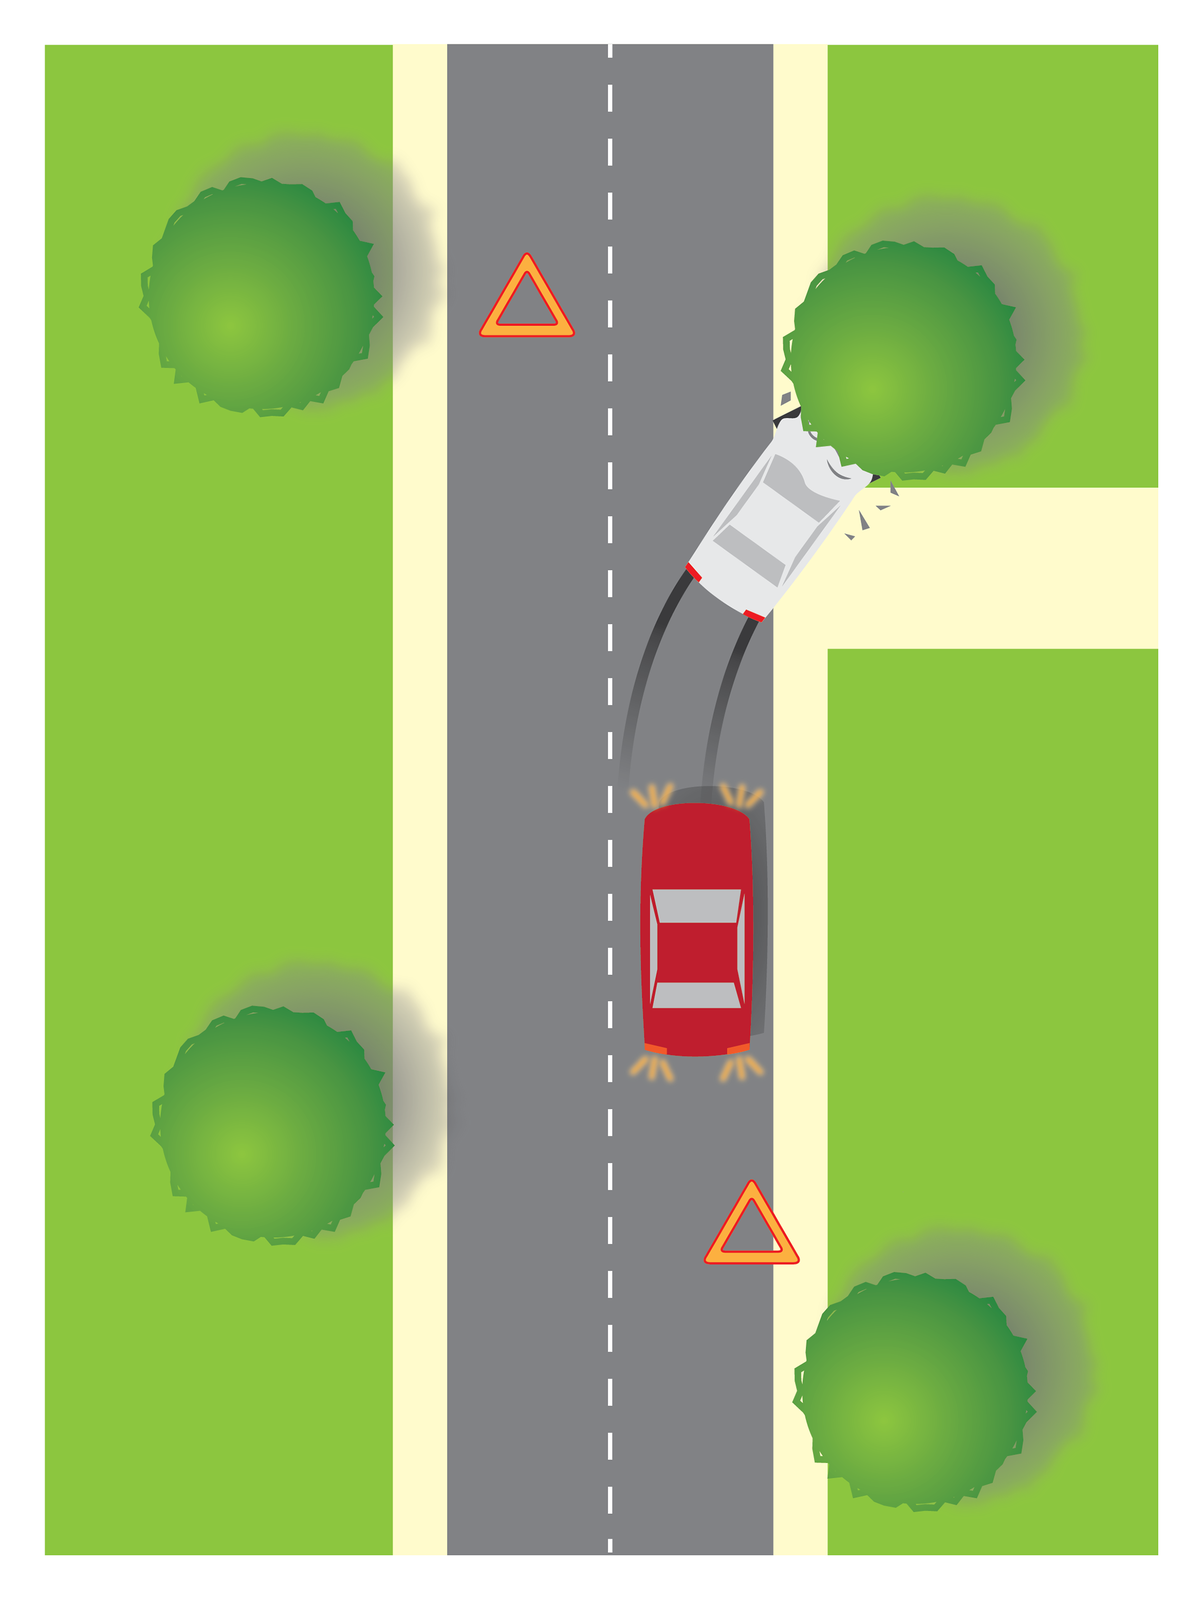 Galeria 1 składa się z 4 ilustracji. Ilustracja podzielona na 3 równe pionowe pasy. Środkowy pas to dwupasmowa jezdnia. Wzdłuż jezdni przerywana linia. Po obu stronach jezdni pasy zieleni. Dzień. Na prawym pasie zaparkowany czerwony samochód osobowy. Samochód maską skierowany w górę ilustracji. Za tyłem samochodu, w dole ilustracji, rozłożony pomarańczowy trójkąt ostrzegawczy. Samochód ma włączone światła awaryjne. Przez maską samochodu dwa czarne ślady na jezdni, skręcające w prawo. Czarne ślady to droga hamowania białego samochodu. Biały samochód czołowo uderzył w przydrożne drzewo. Na lewo, powyżej białego samochodu, rozłożony pomarańczowy trójkąt ostrzegawczy.